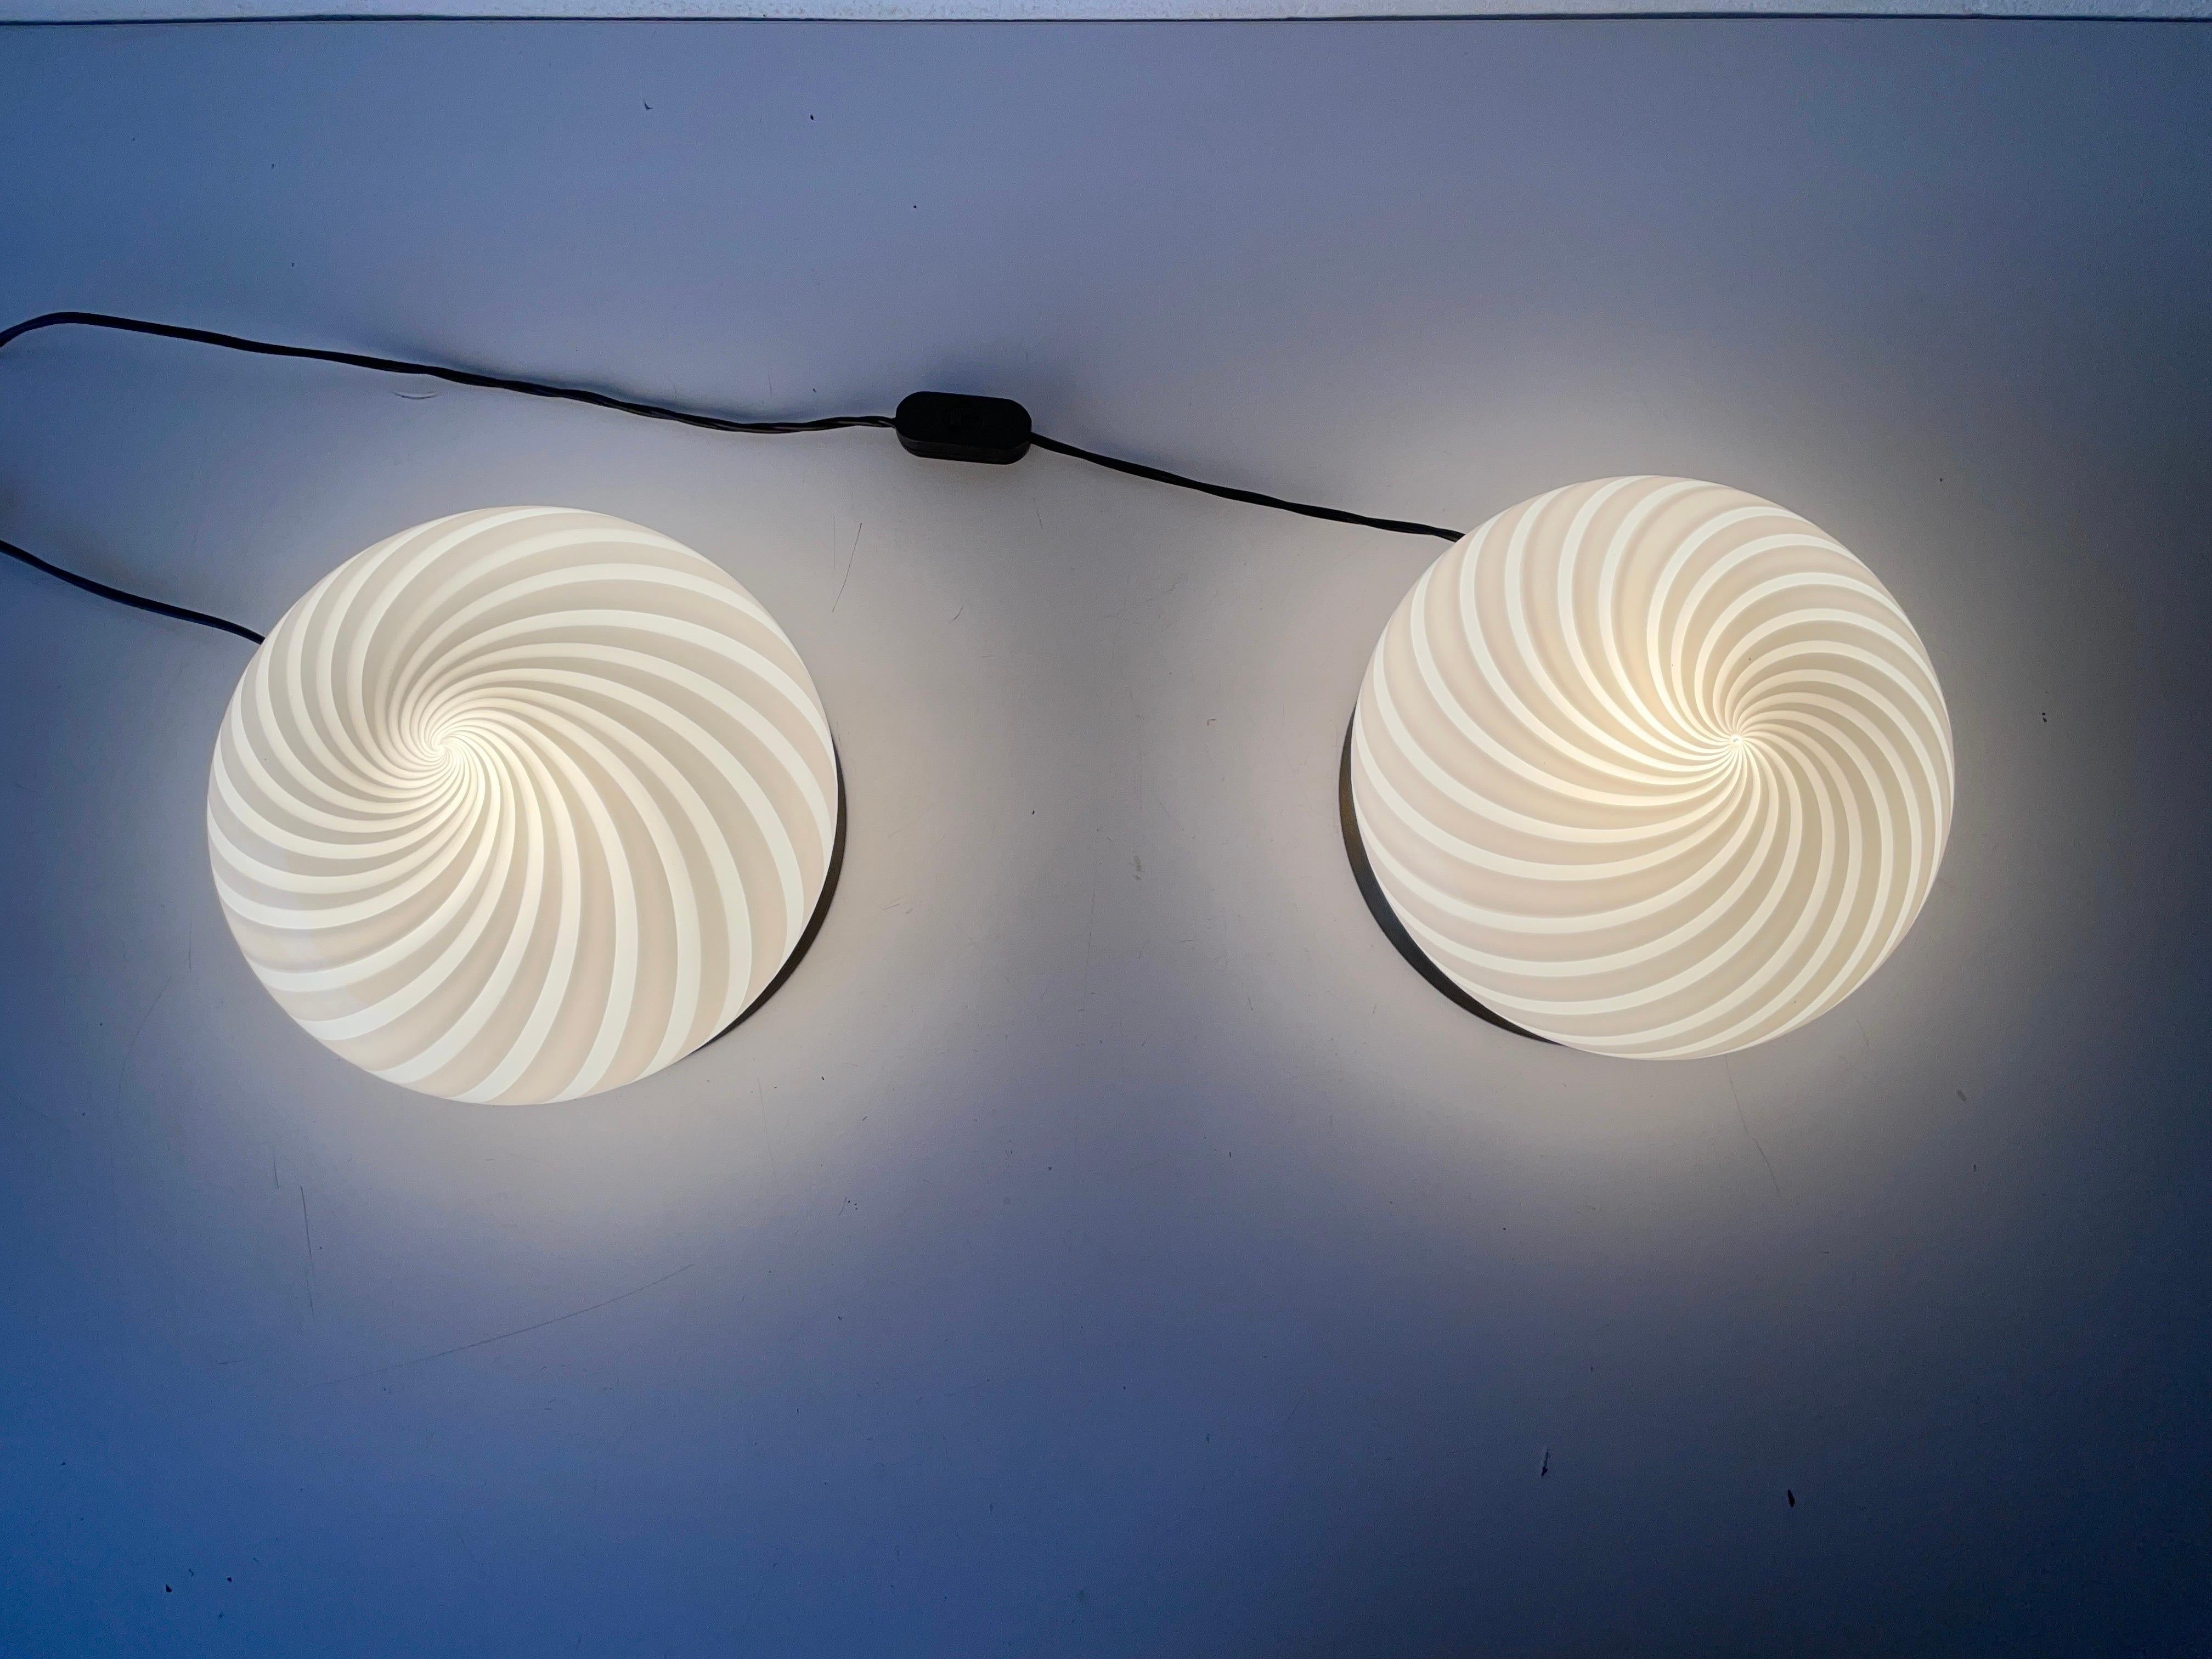 Pair of Table Lamps by Milano-Industria Lampadari Lamter, 1950s, Italy For Sale 3